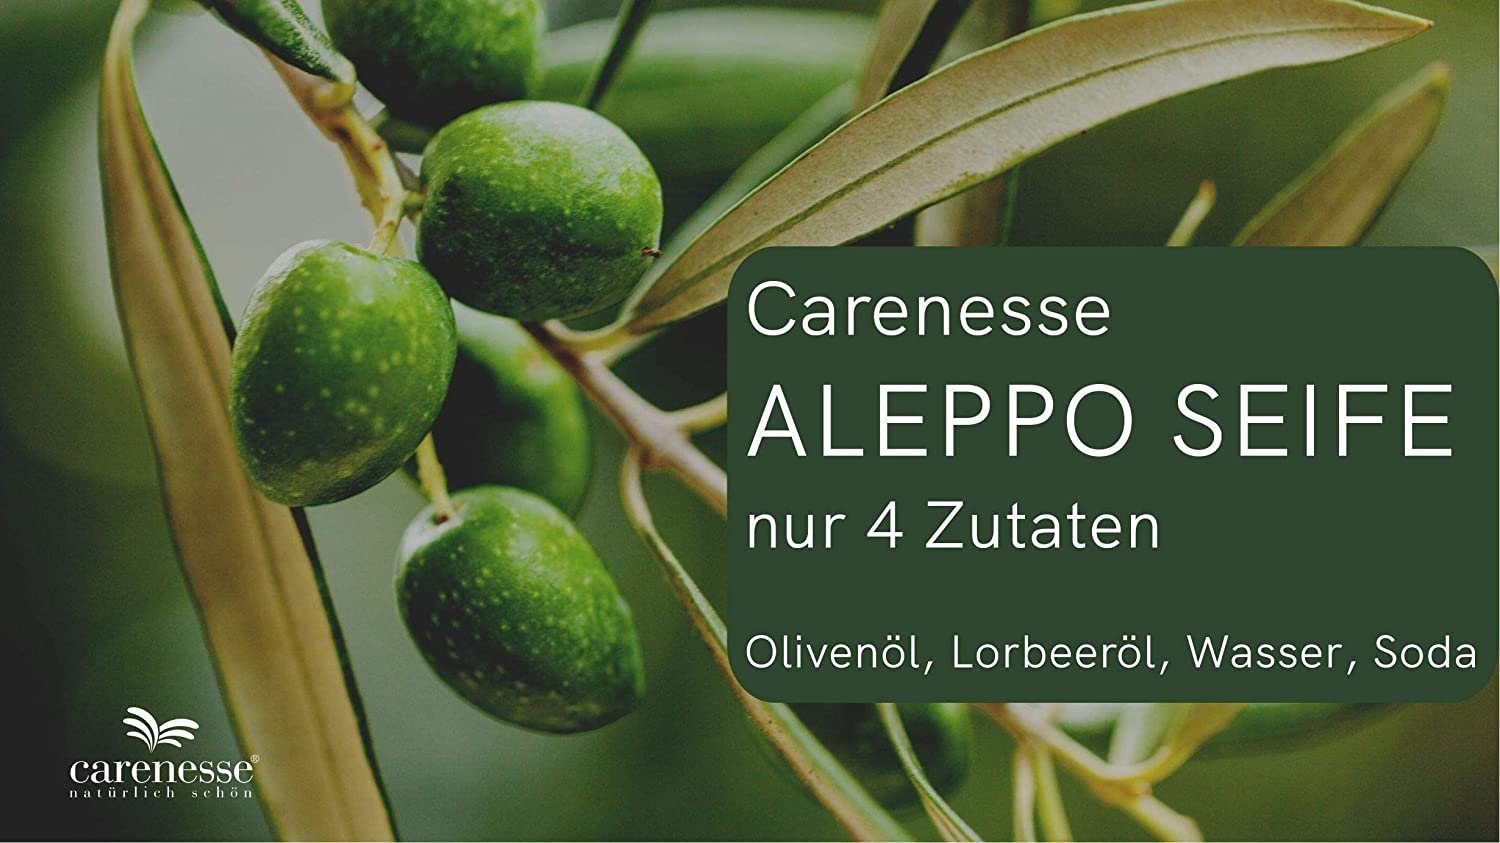 & Seife 200 Lorbeeröl Olivenölseife, Lorbeerölseife, Carenesse Haarseife Alepposeife, Aleppo 20% g, 5 Original 80% x Olivenöl, Aleppo-Seife, Seifen-Set